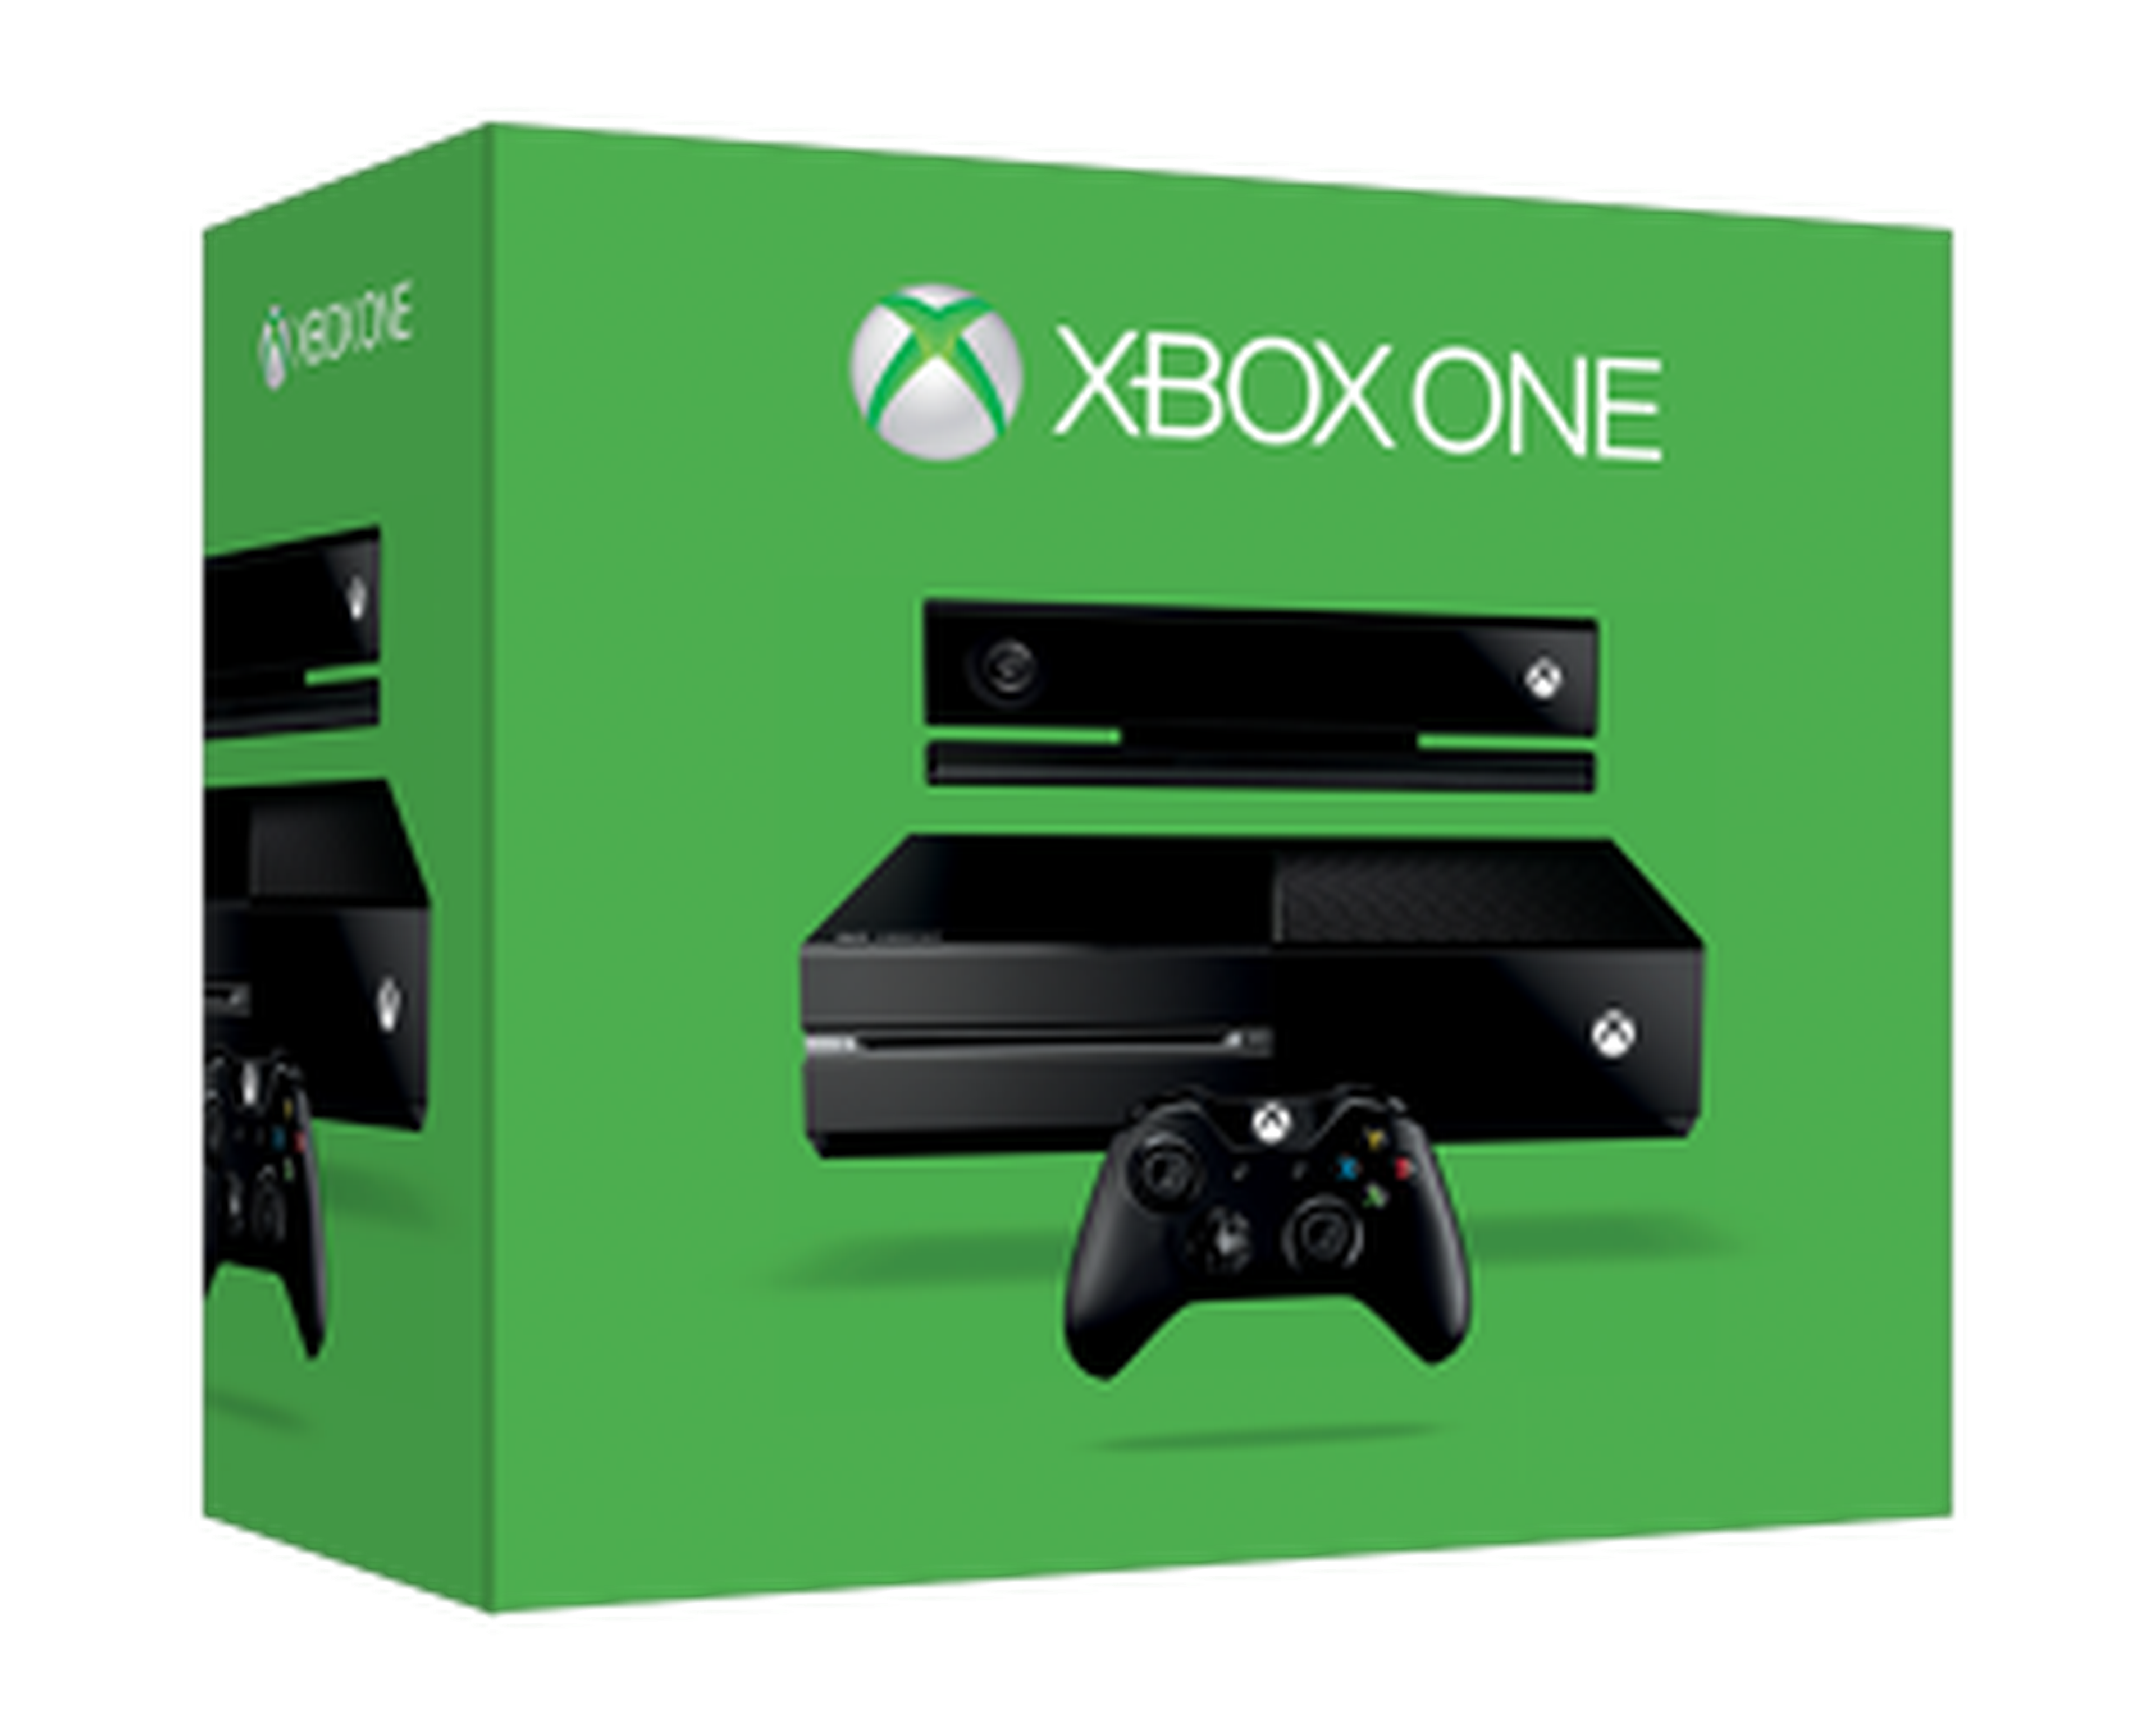 Хбох пк. Игровая приставка Xbox one. Игровая приставка Xbox one 500. Игровая приставка Microsoft Xbox Series s. Xbox Series s 500gb.